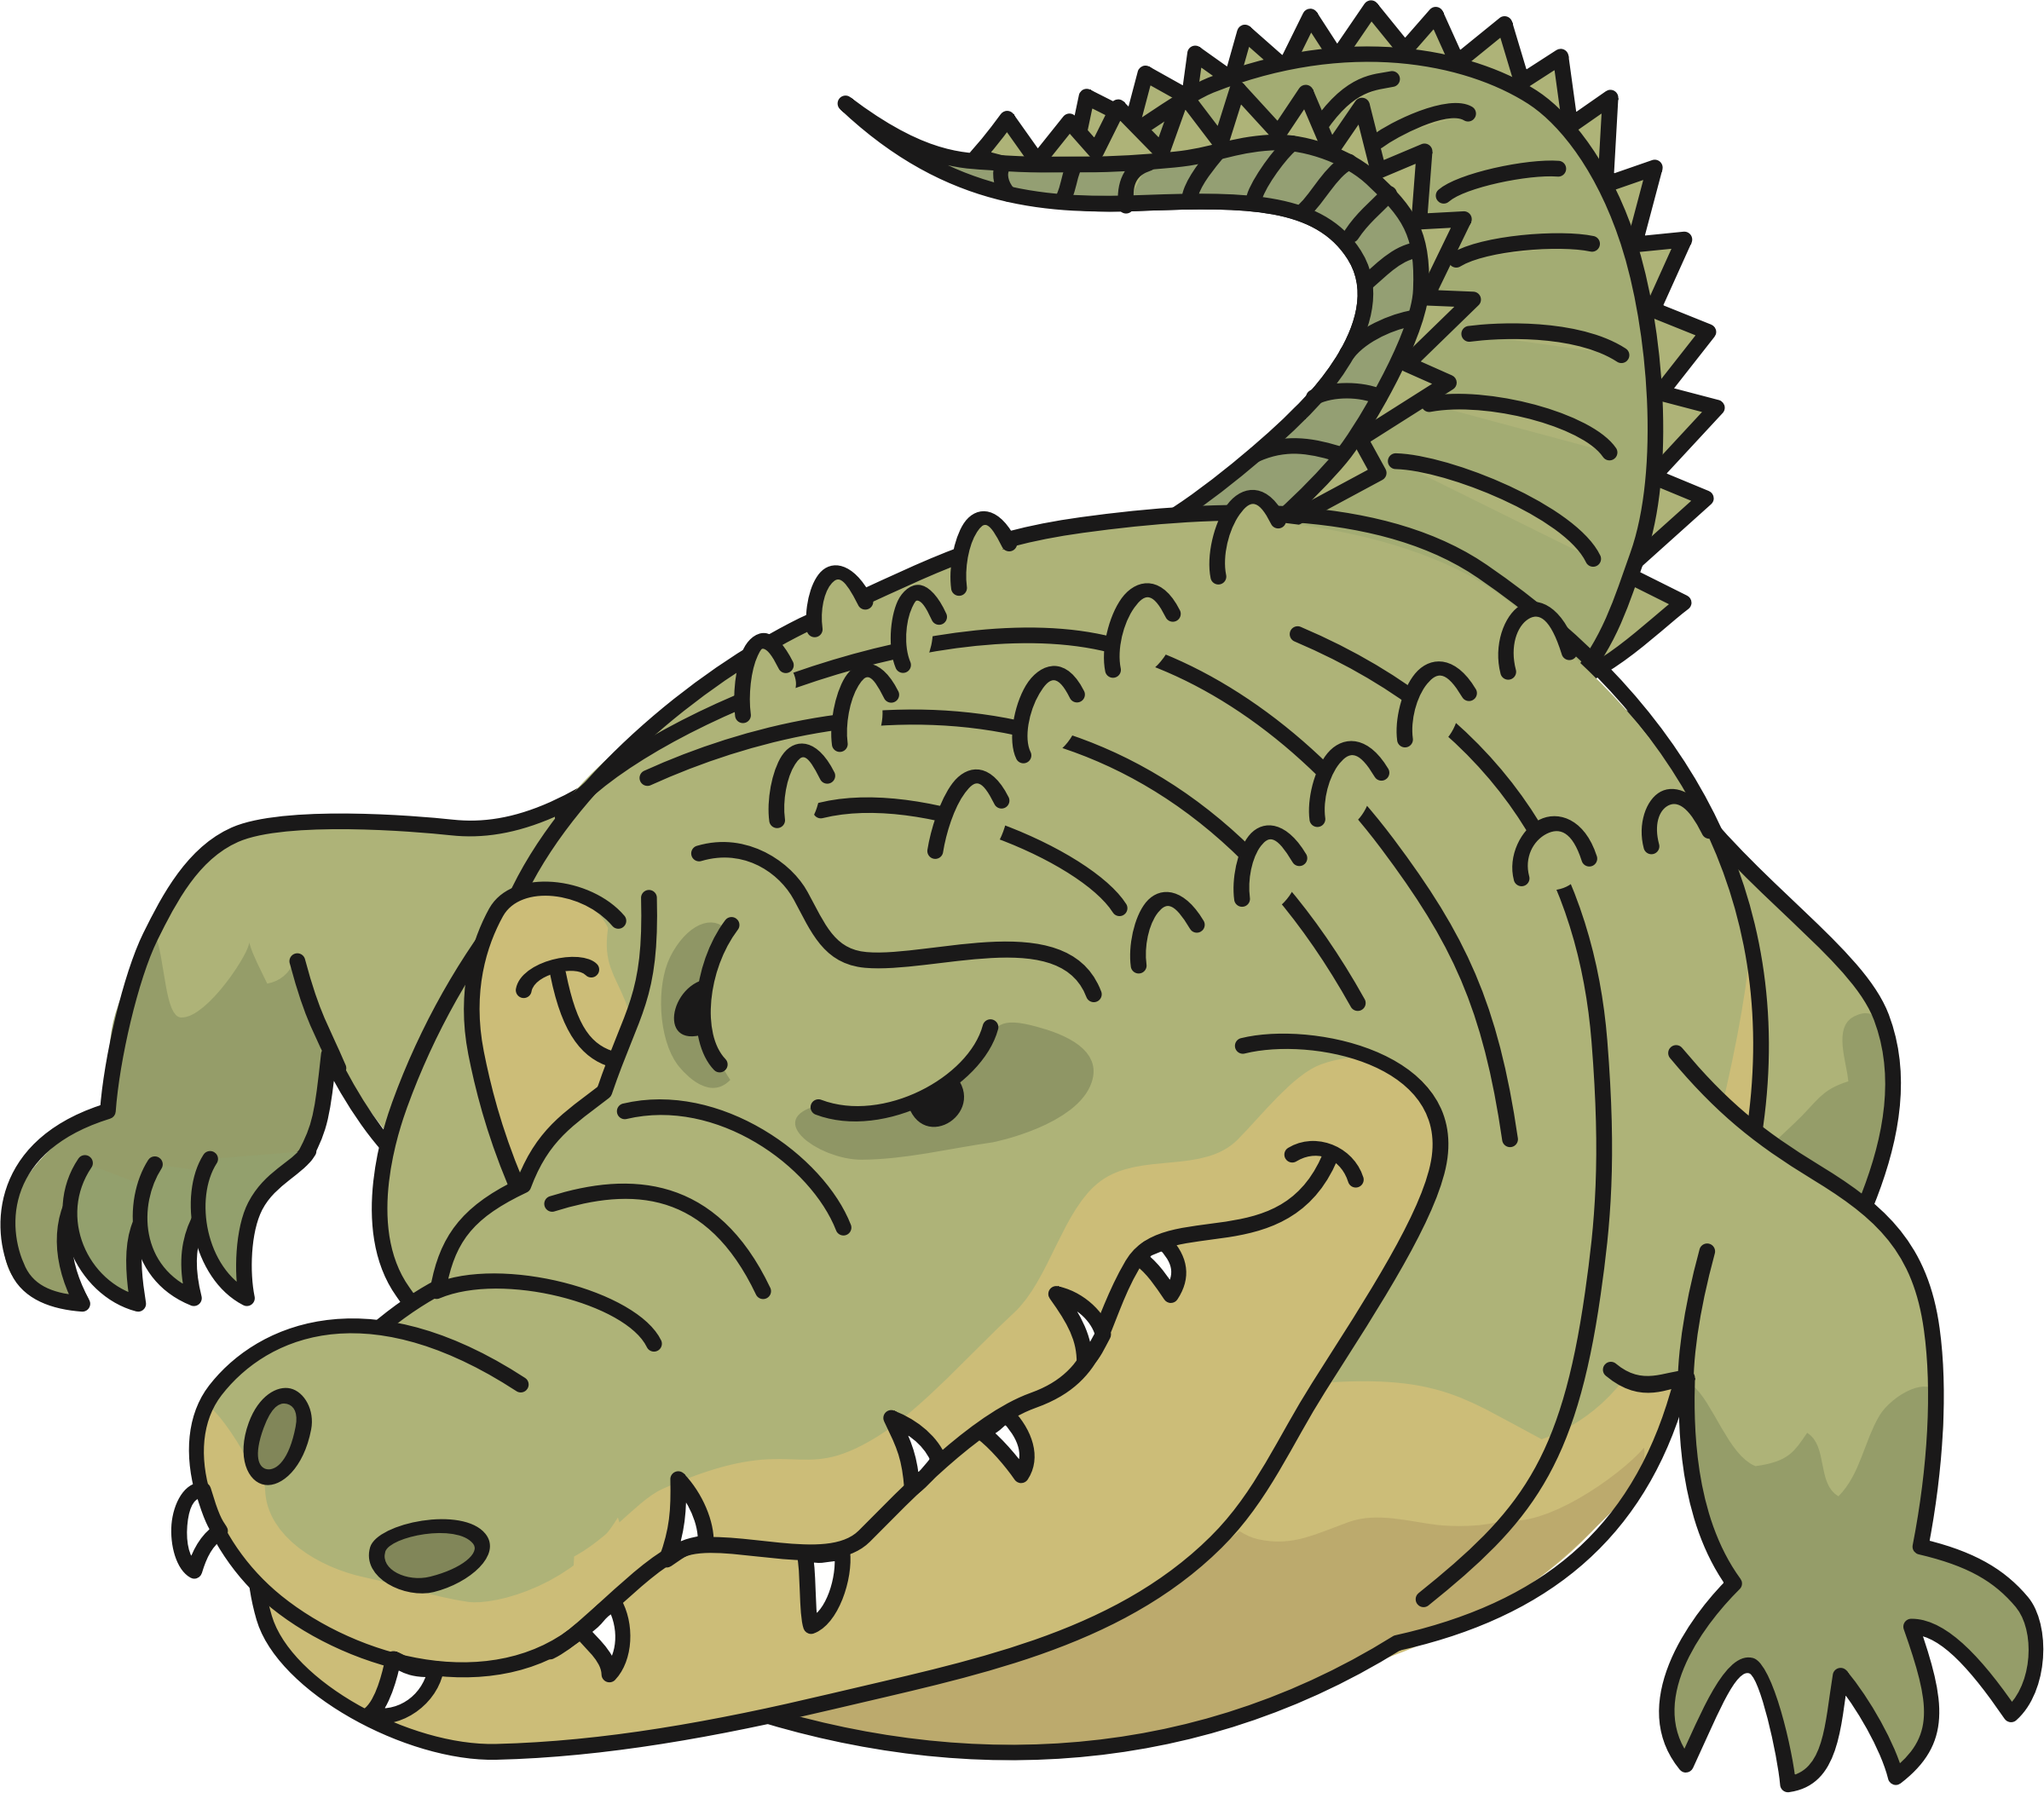 Crocodile - Crocodiles (2398x2104)